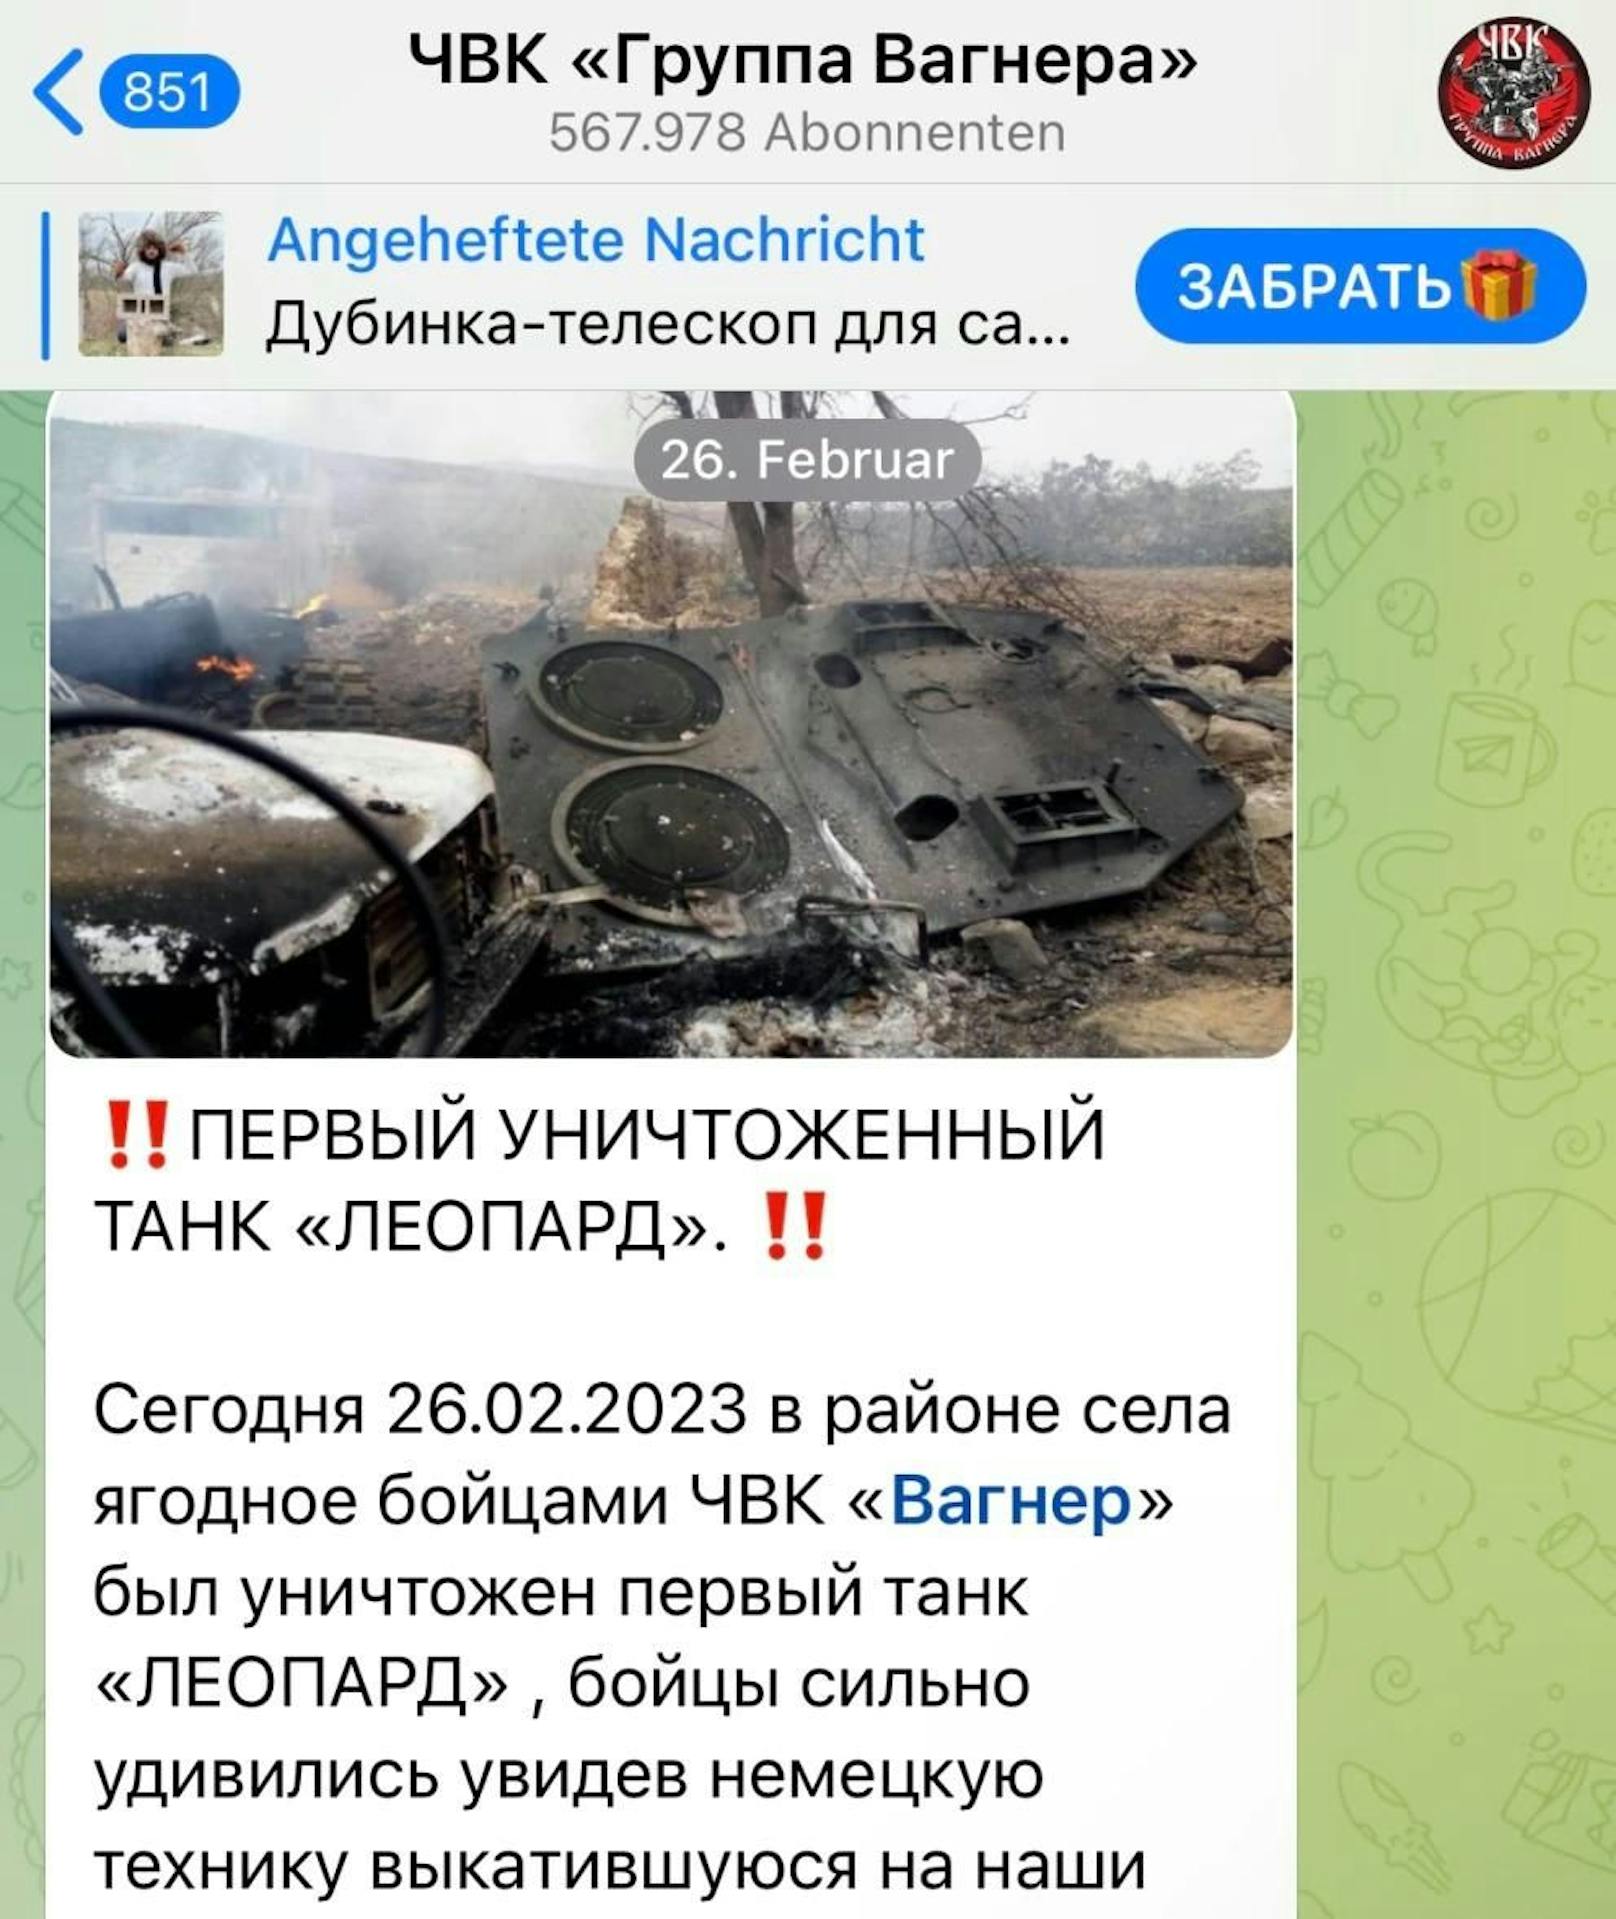 In diesem Beitrag feiern Wagner-Söldner die Zerstörung eines Leopard-2-Panzers in der Ukraine. Allerdings ist dies eine Lüge.